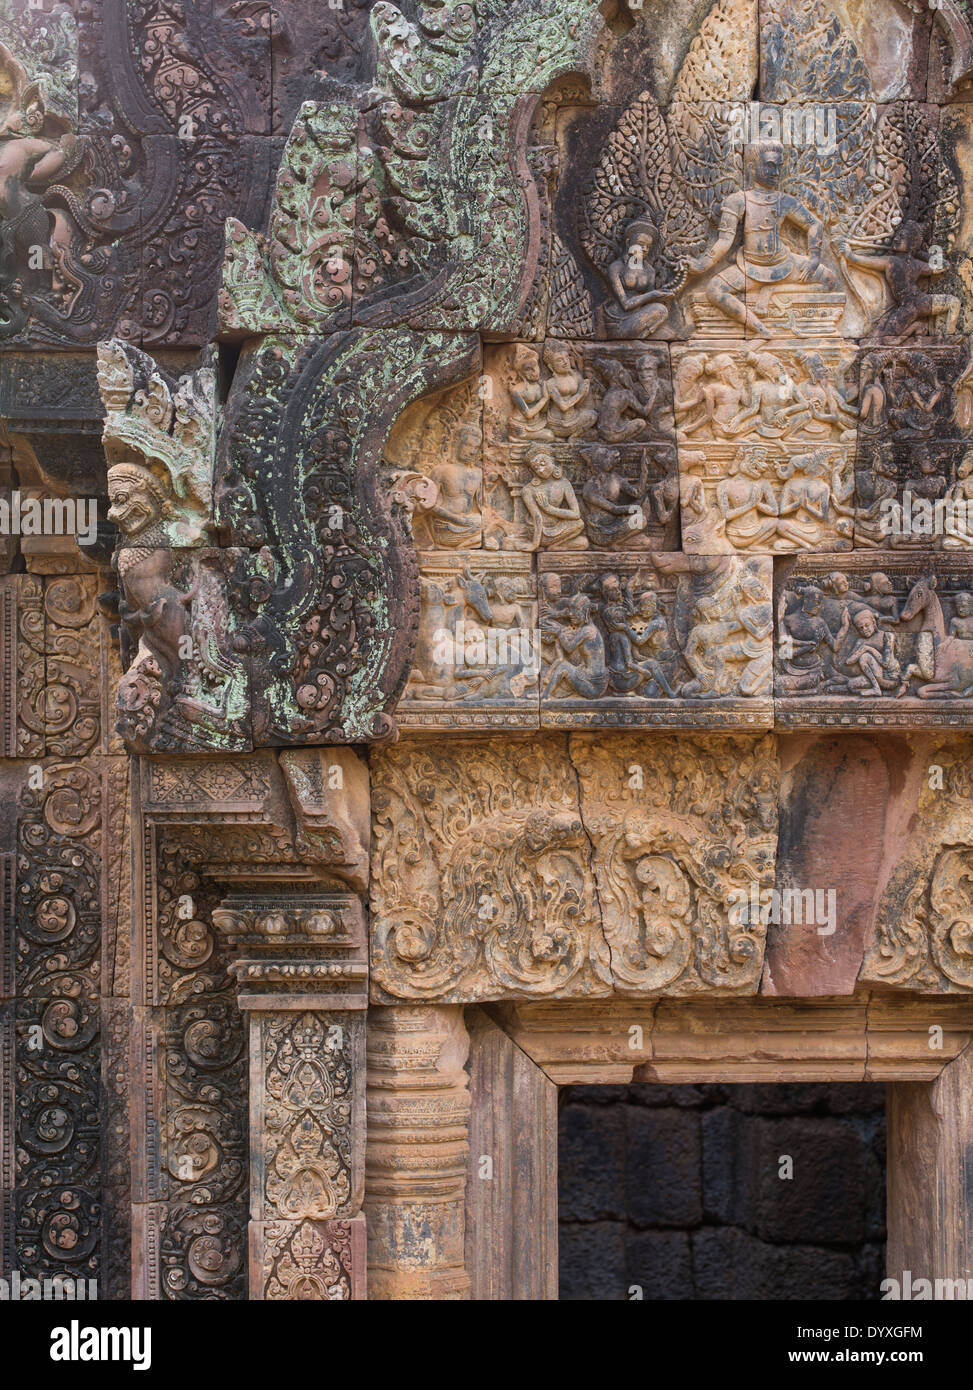 Dans les sculptures ornées de linteaux de grès au-dessus des embrasures à Banteay Srei un temple hindou dédié à Shiva. Siem Reap, Cambodge Banque D'Images